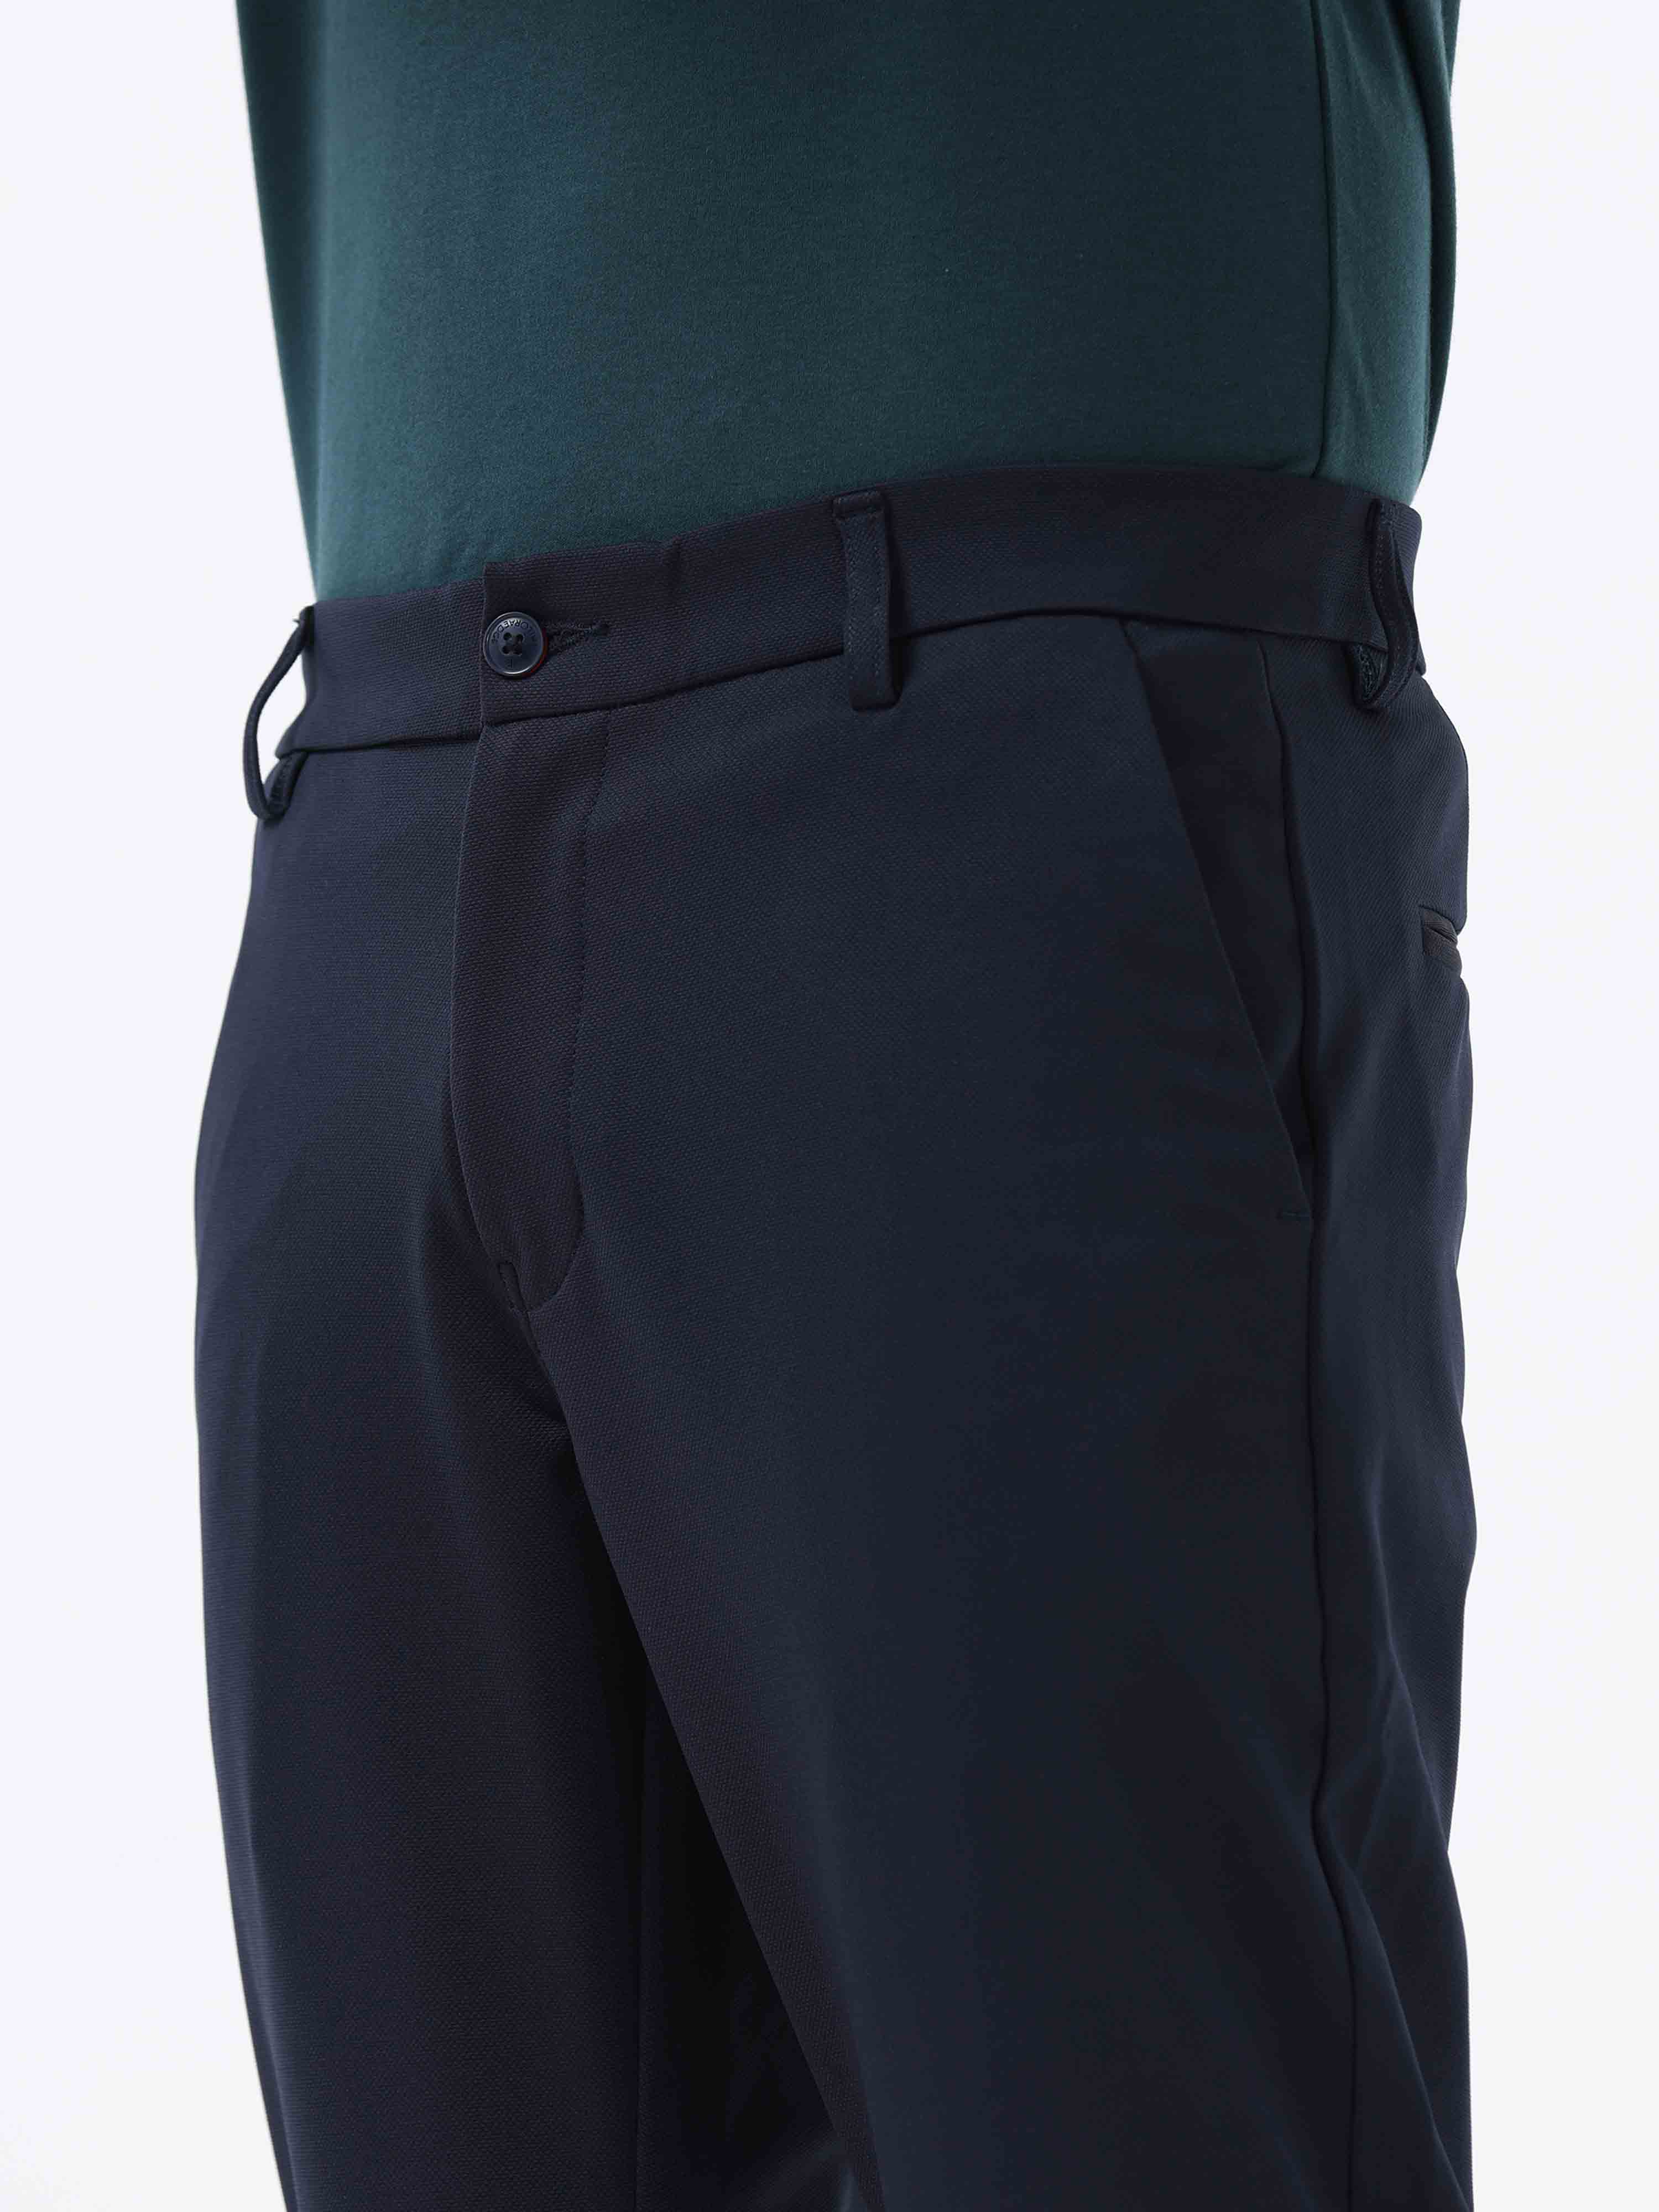 Stretchable Trousers - Buy Stretchable Trousers online in India